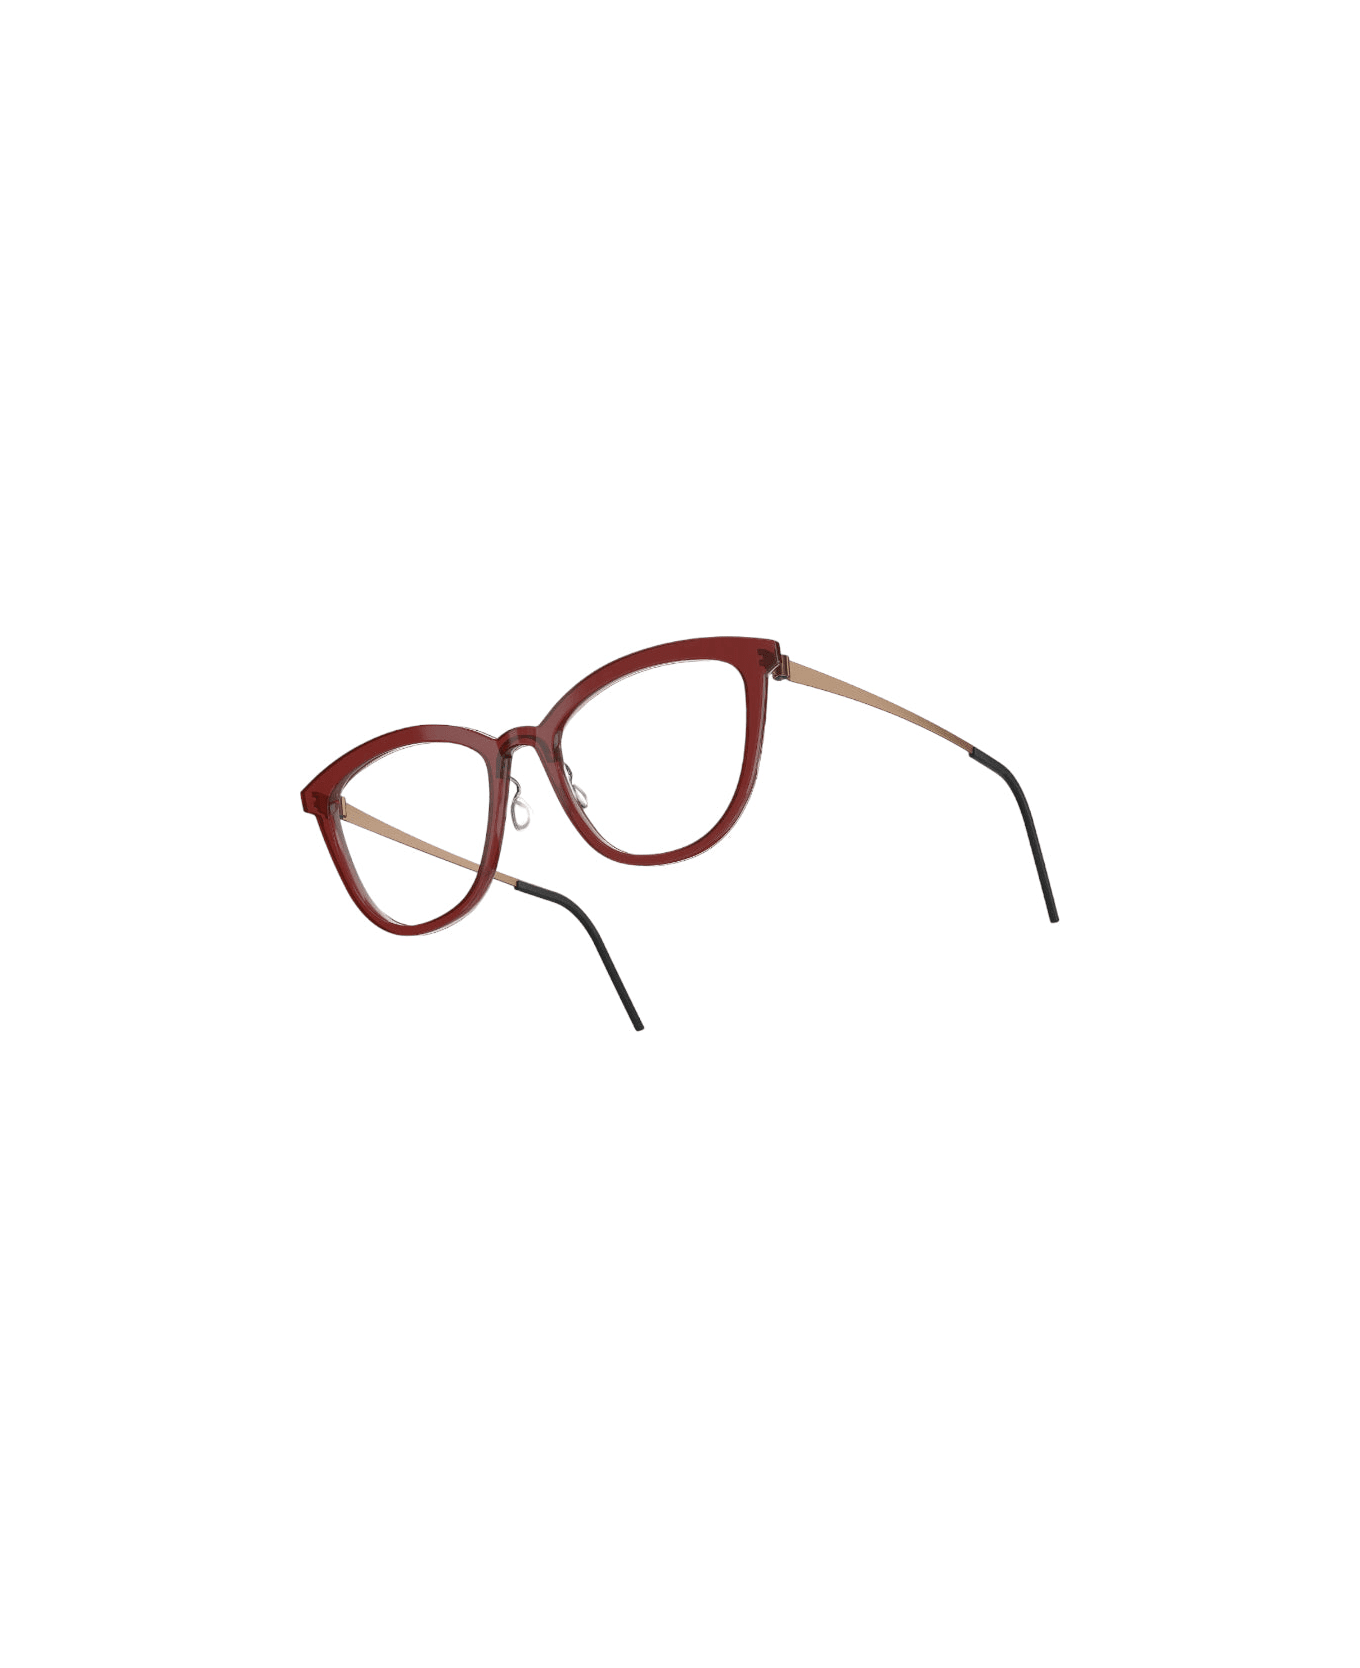 LINDBERG 1178 - Acetanium Glasses